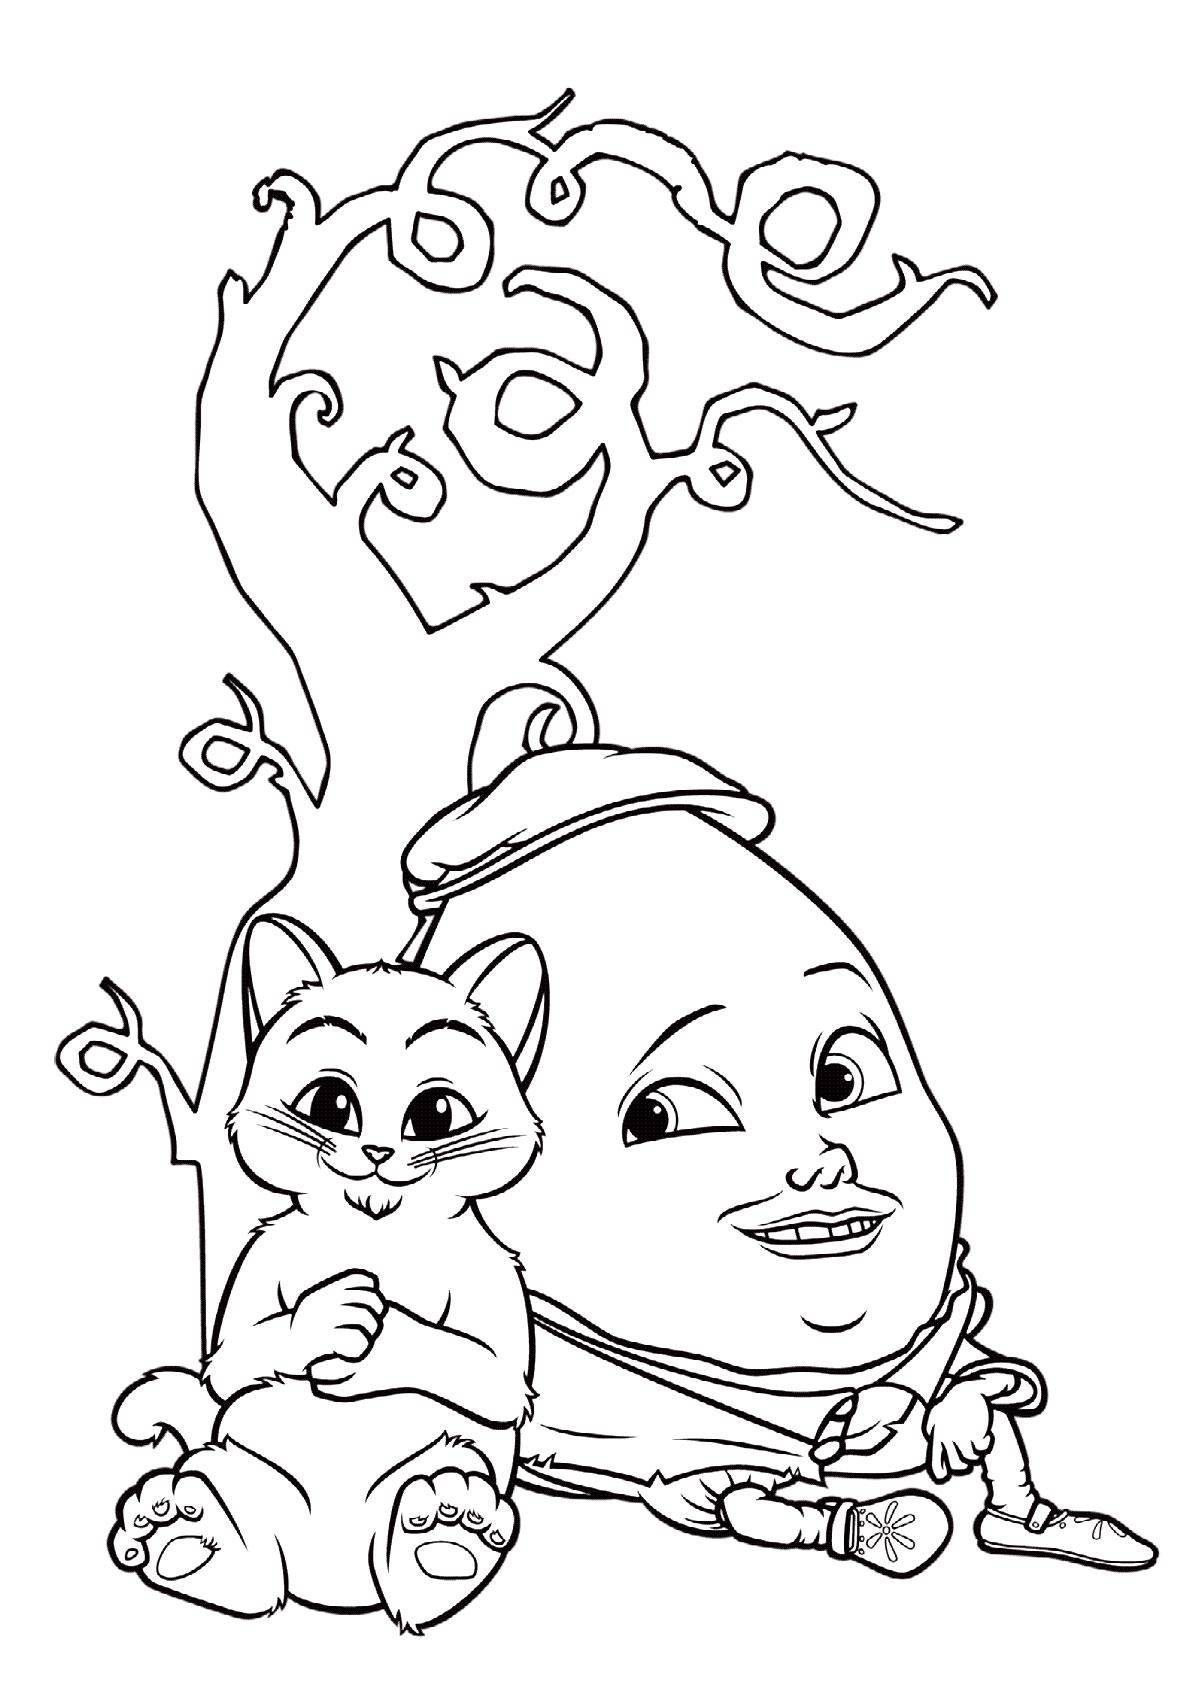 Раскраски про кота в сапогах для детей  Рисунок кот в сапогах и шалтай балтай